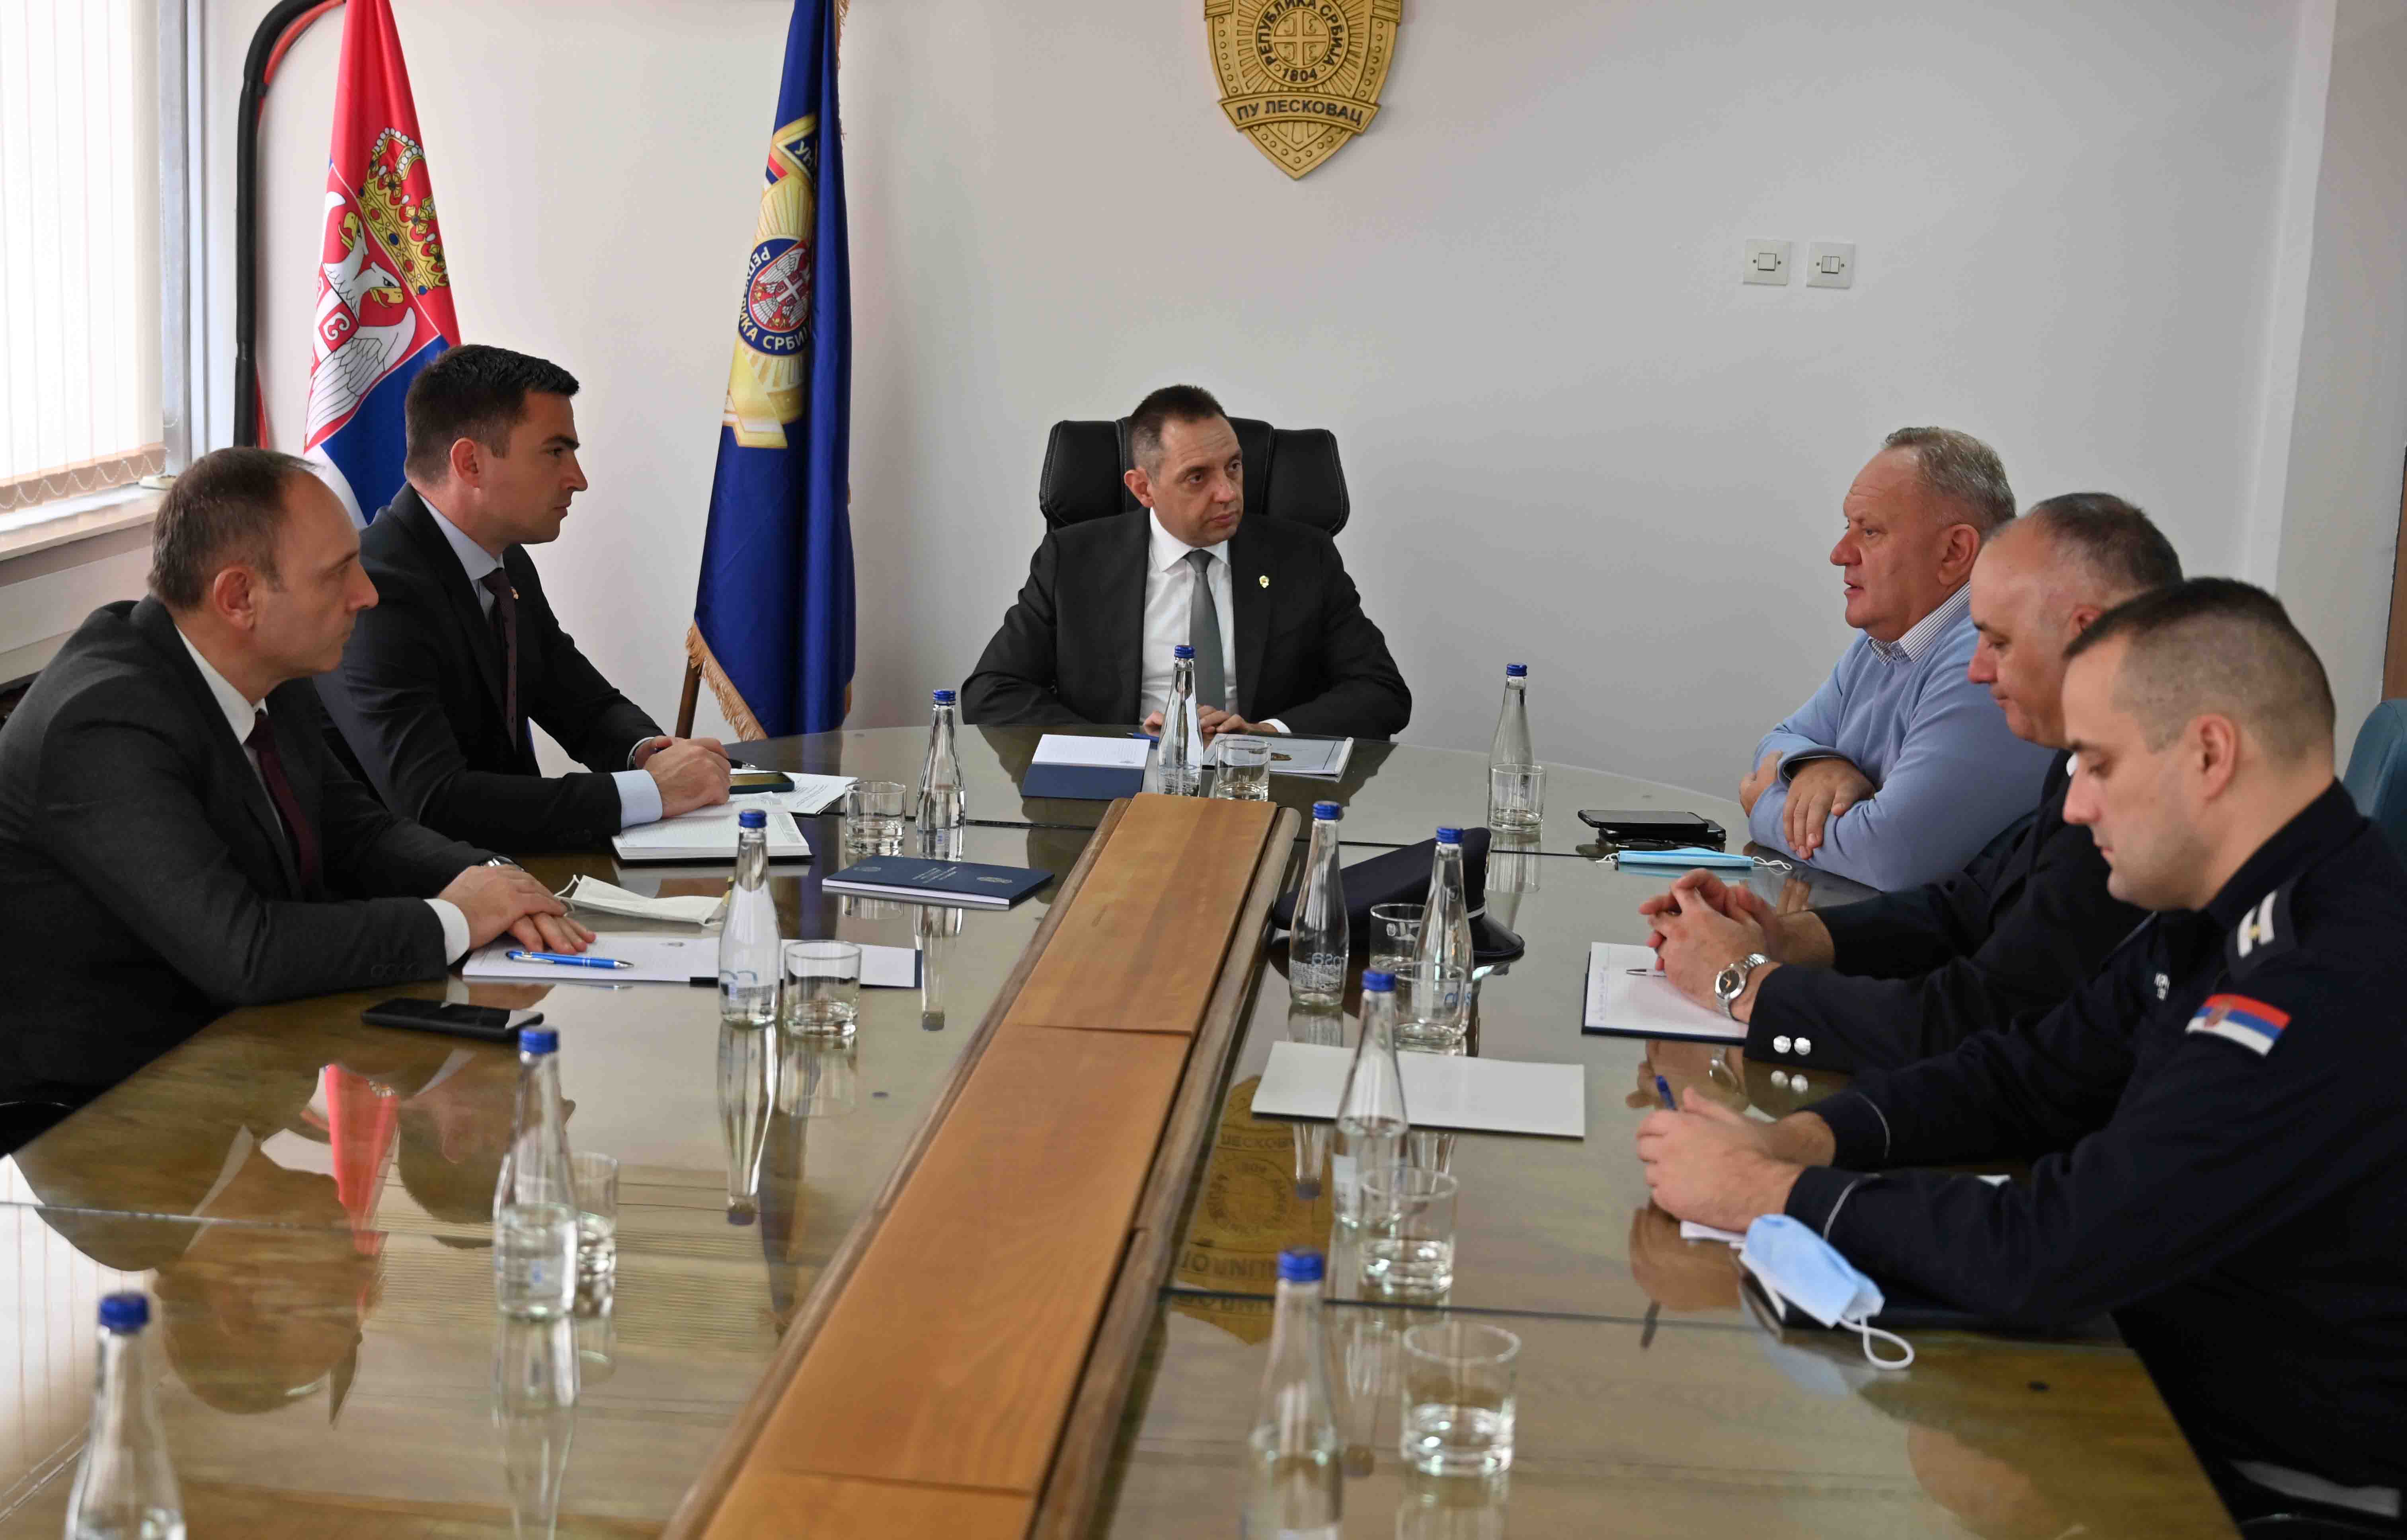 Ministar Vulin u poseti PU Leskovac: Od svake policijske uprave očekujem još intenzivniji obračun sa uličnim kriminalom